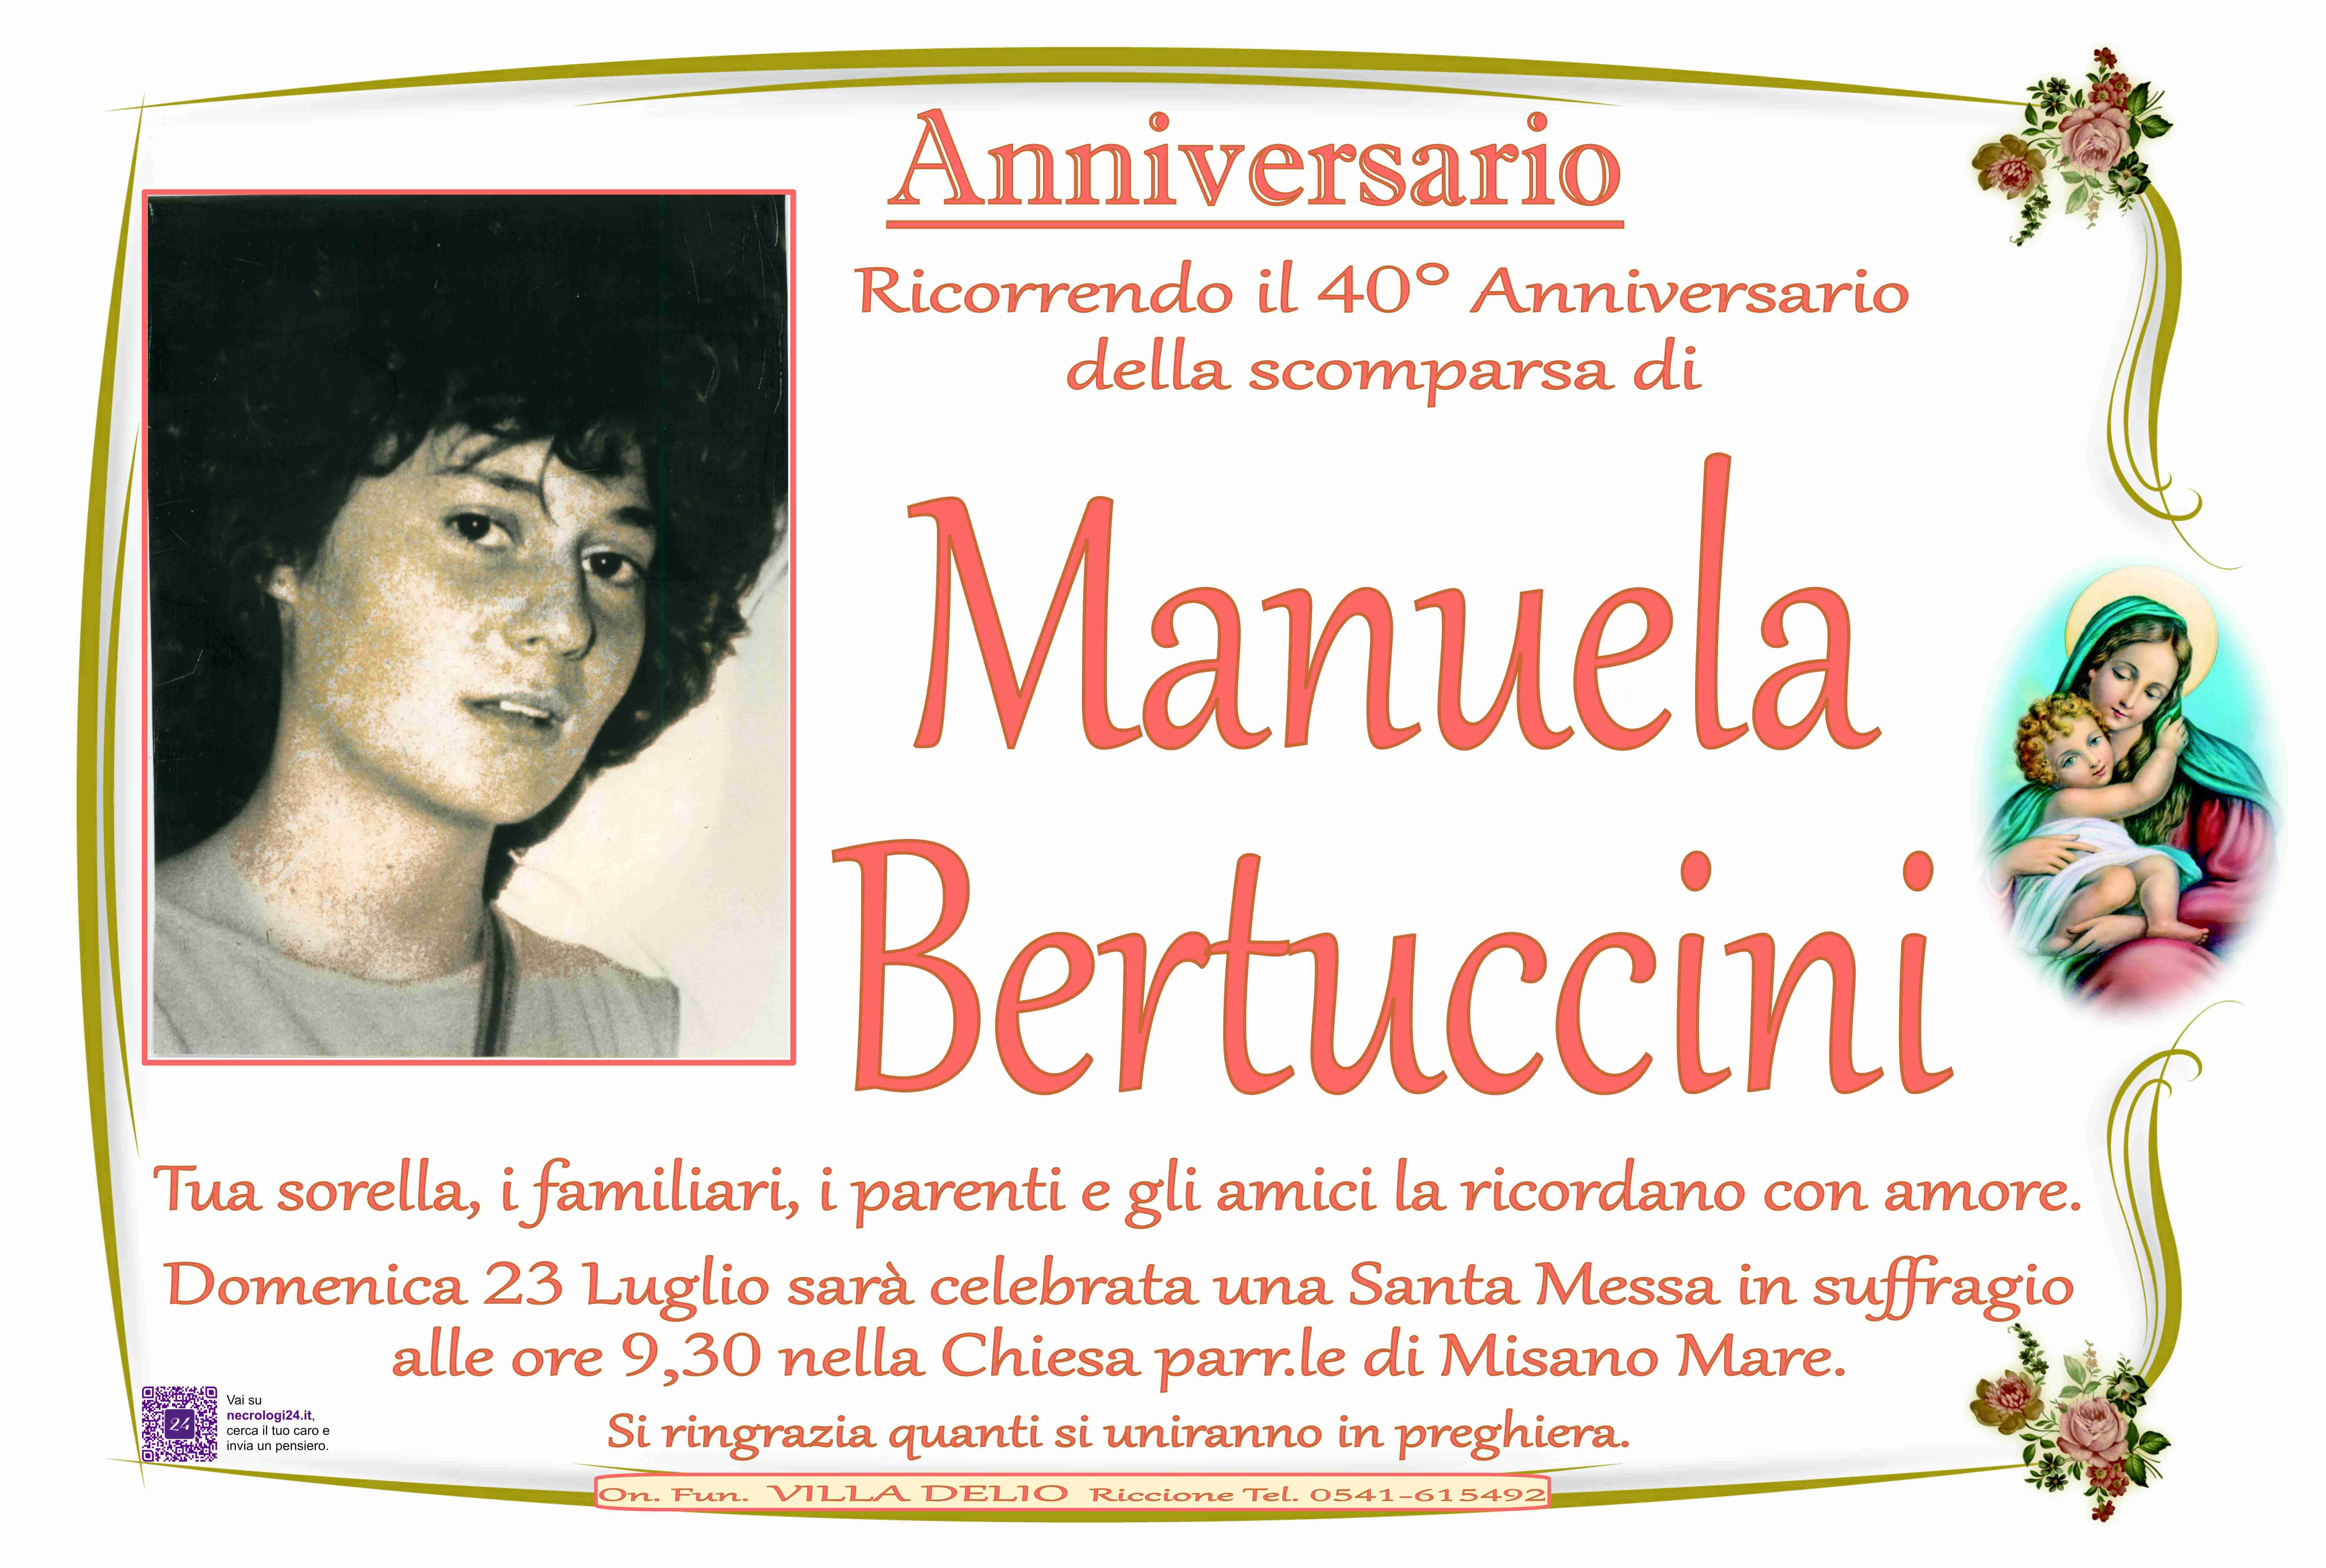 Manuela Bertuccini